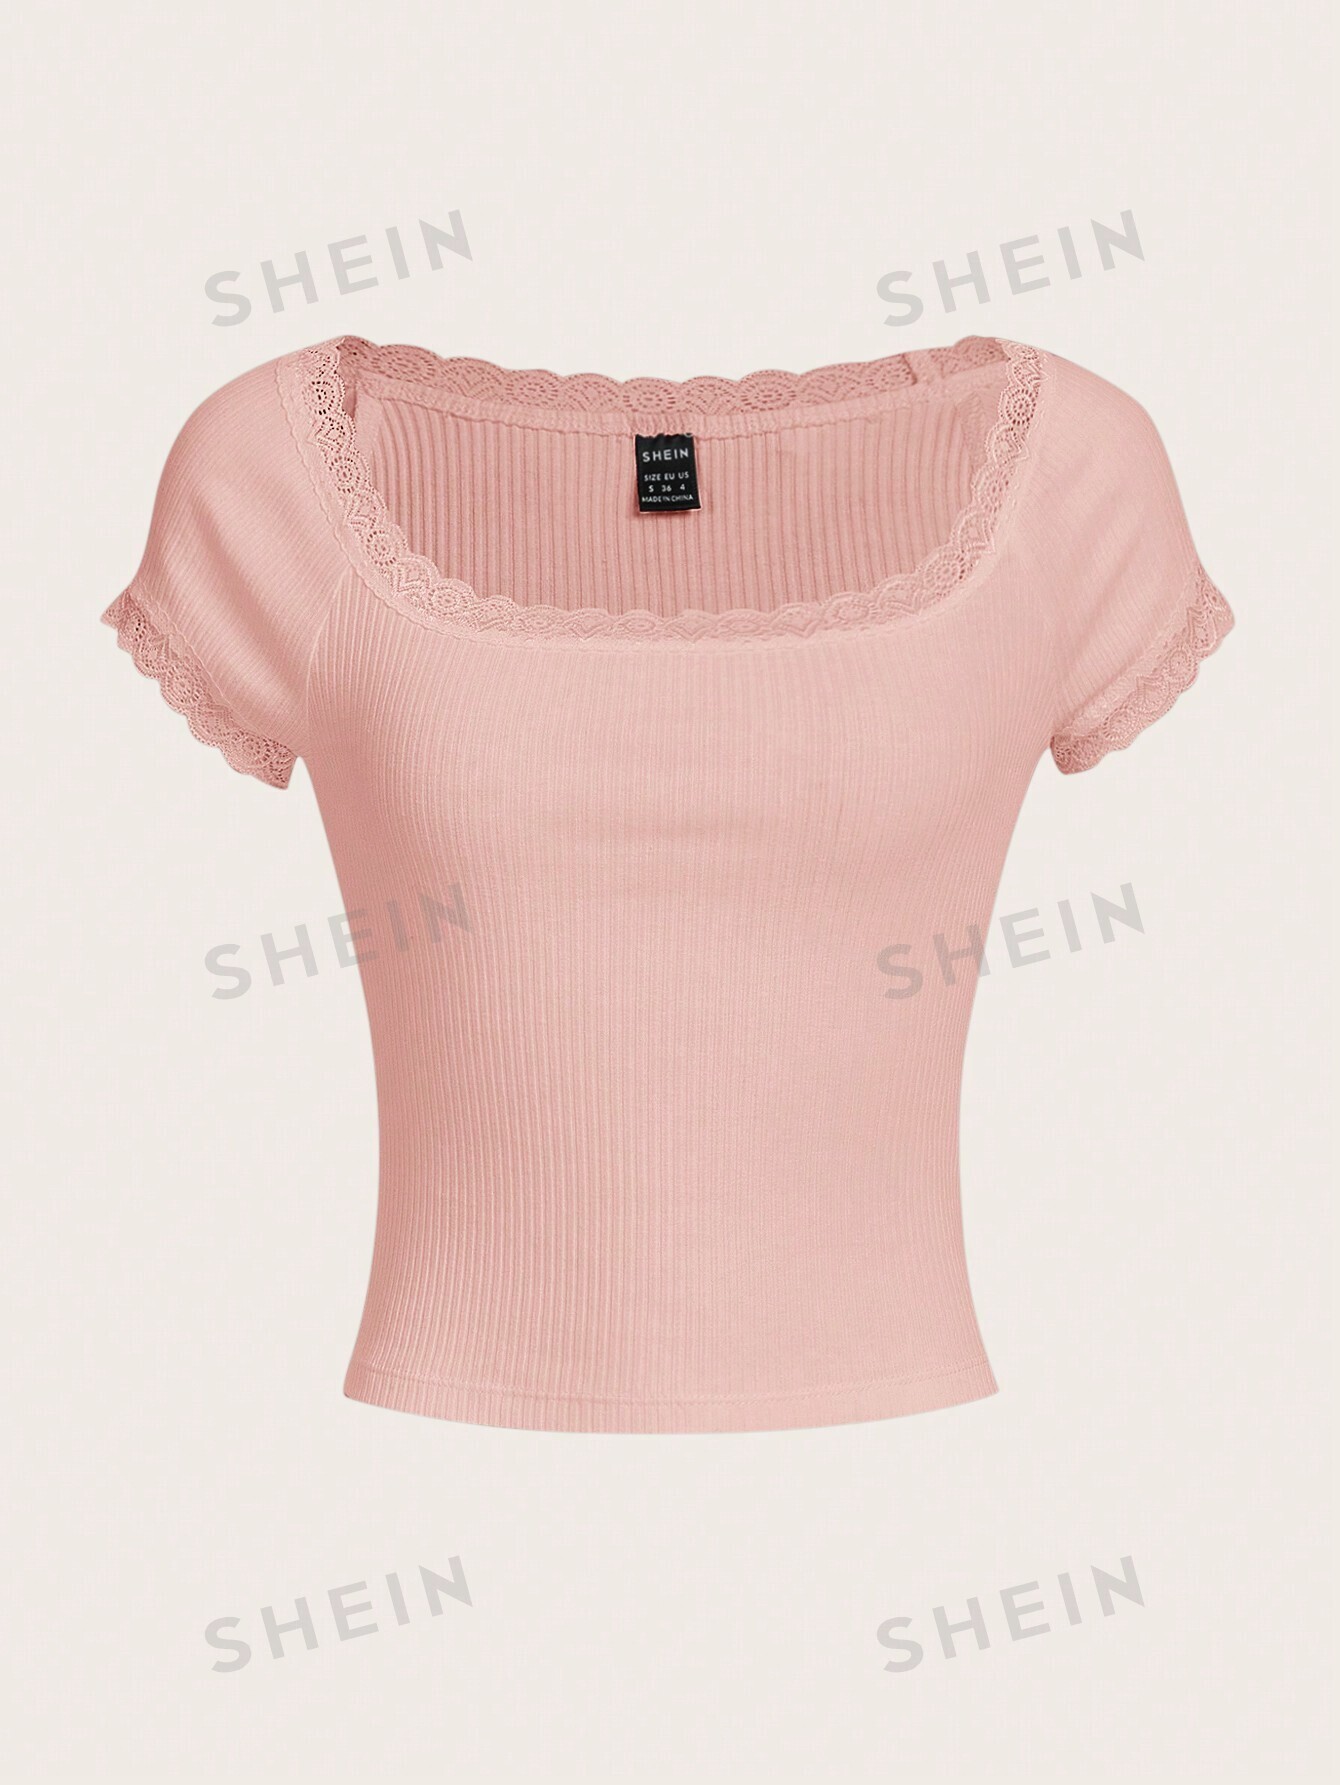 SHEIN Qutie Женская трикотажная футболка с короткими рукавами и кружевным краем, детский розовый